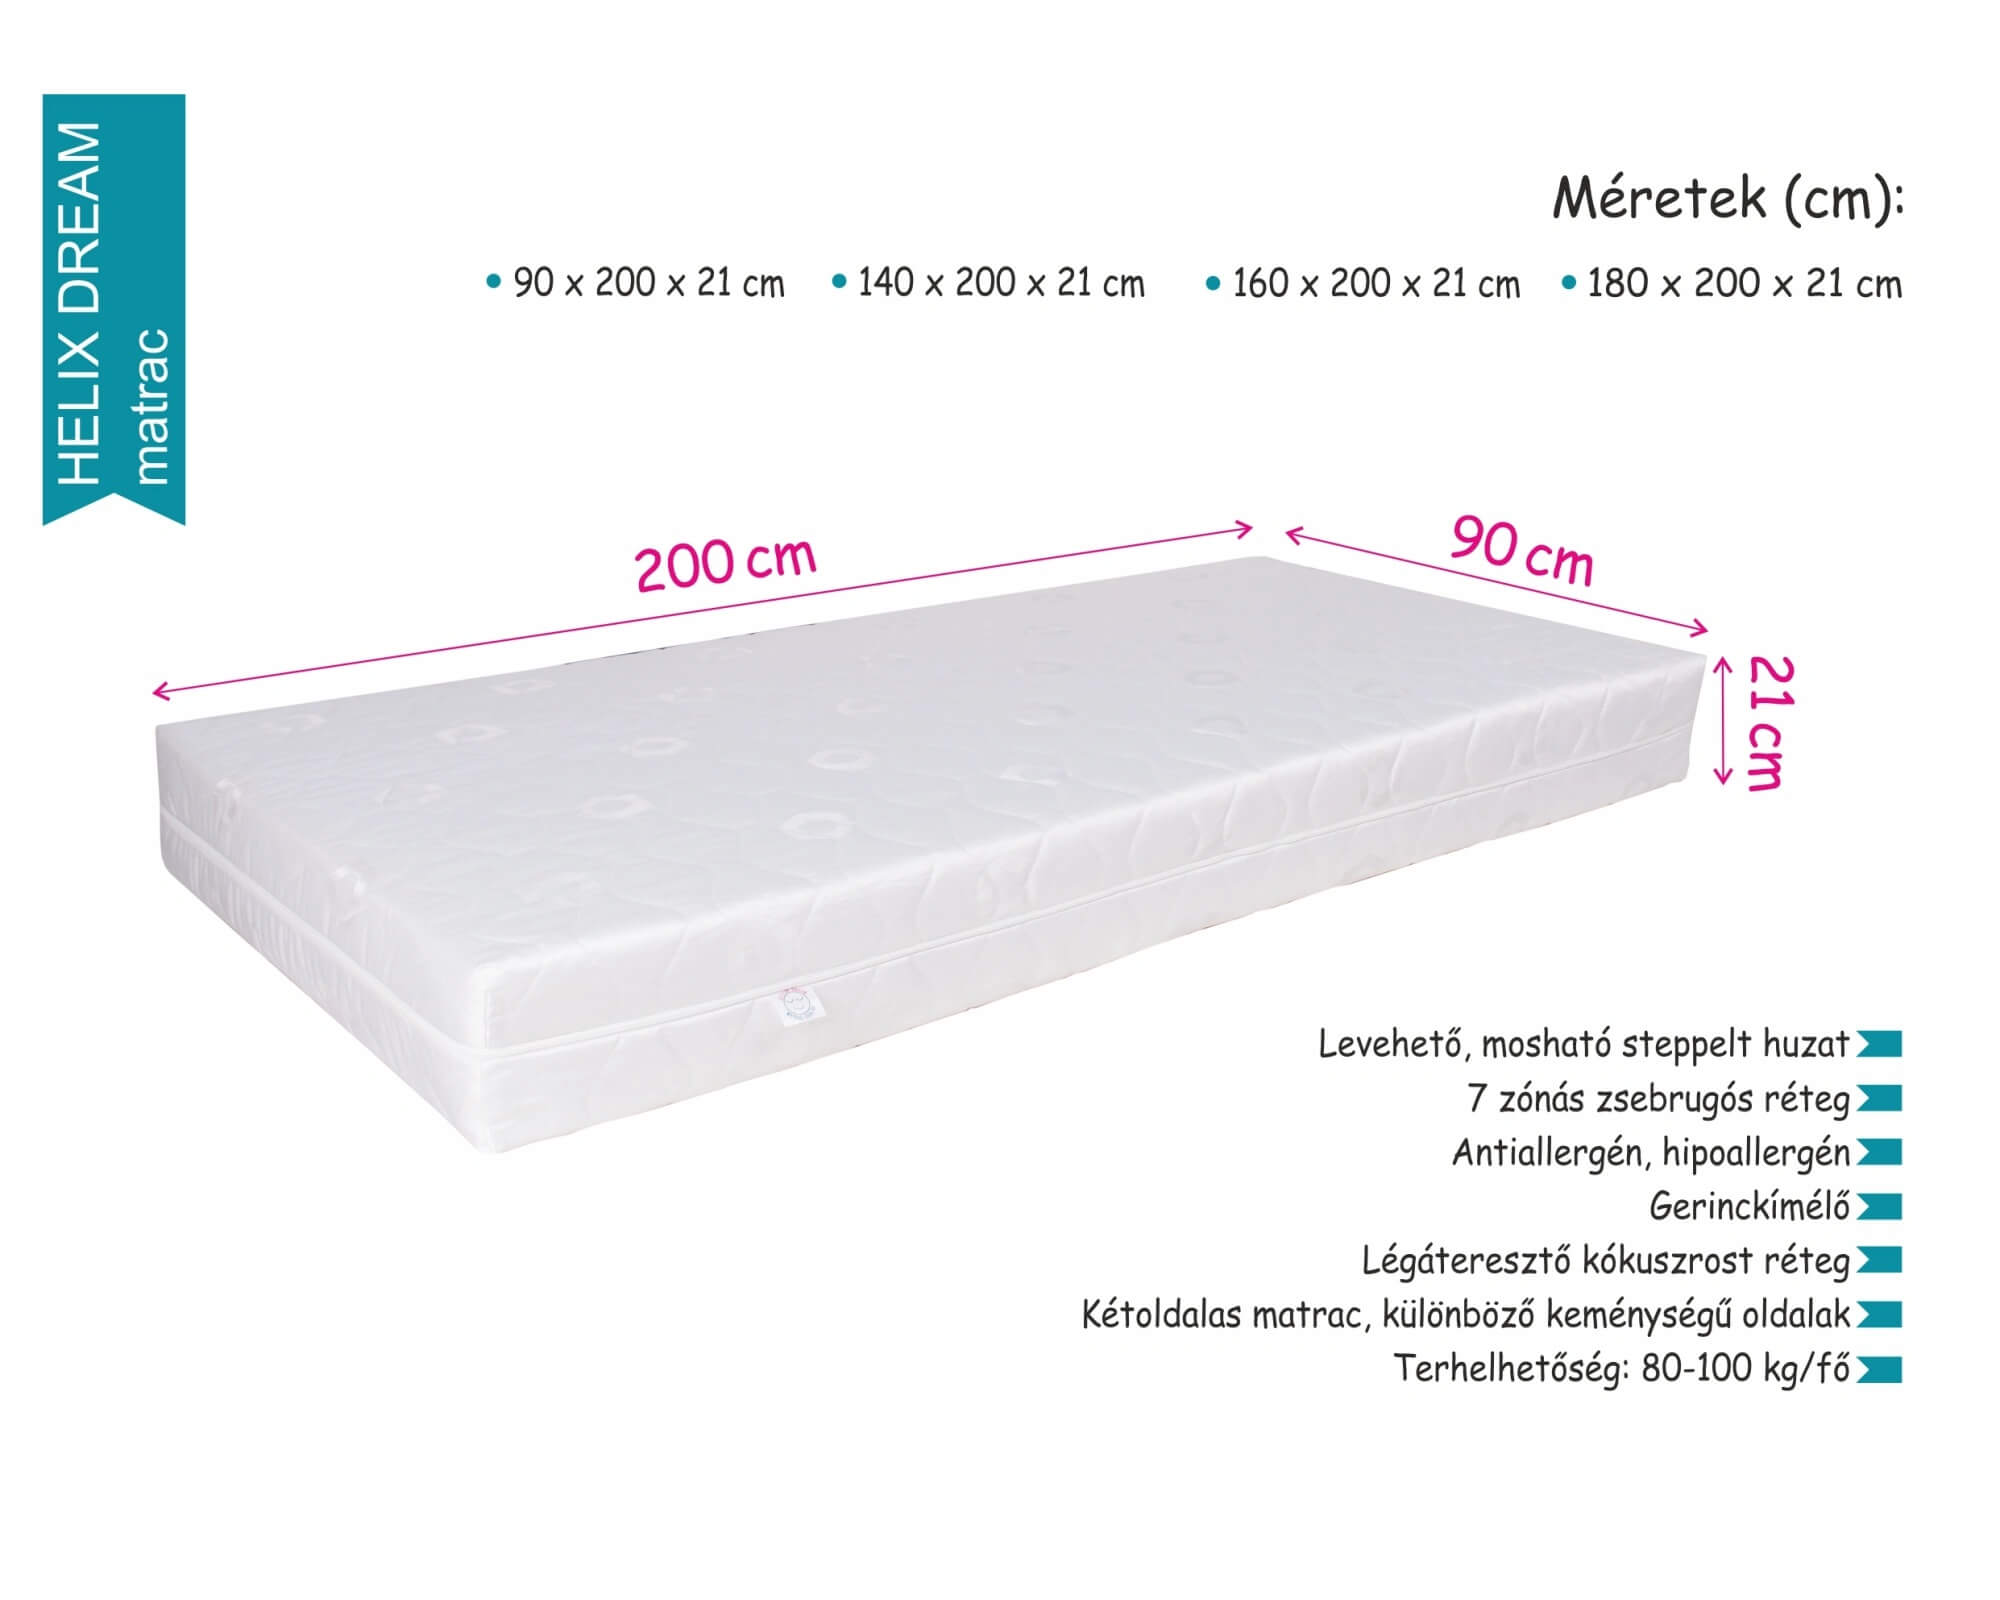 Helix dream matrac | táskarugós - Kókuszrost réteggel | 180x200x21 cm